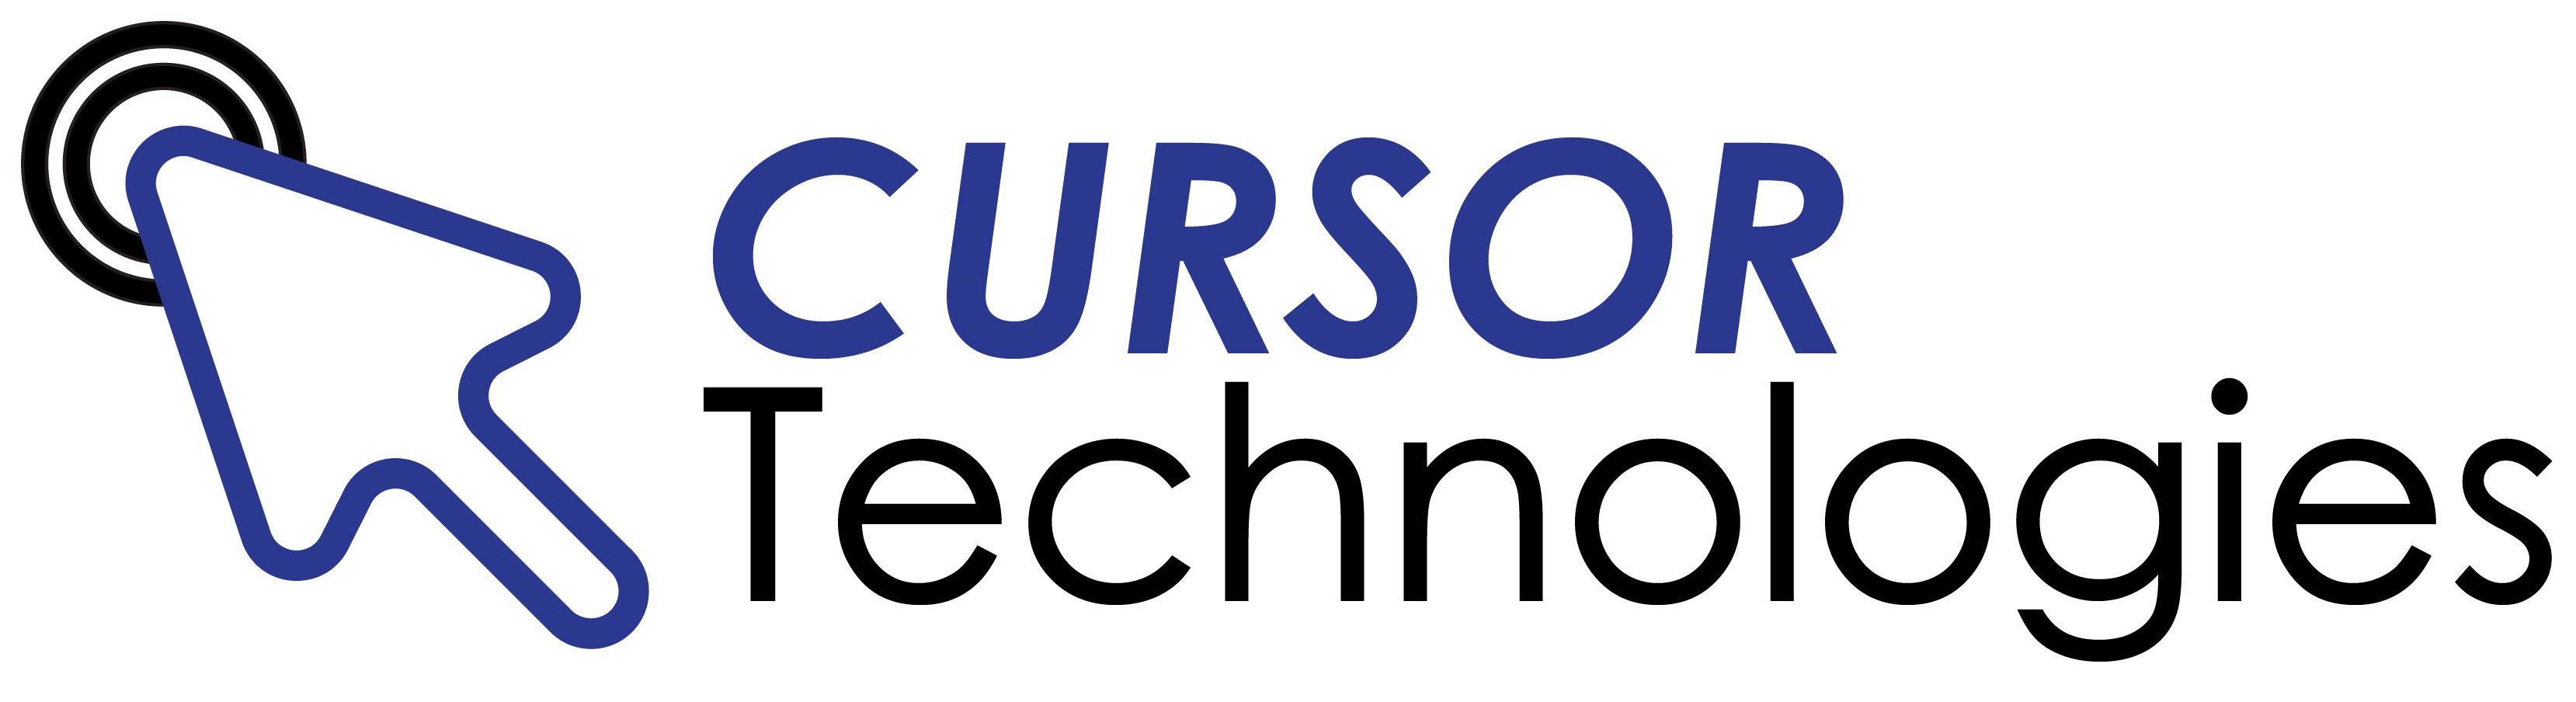 Cursor Tech Ug